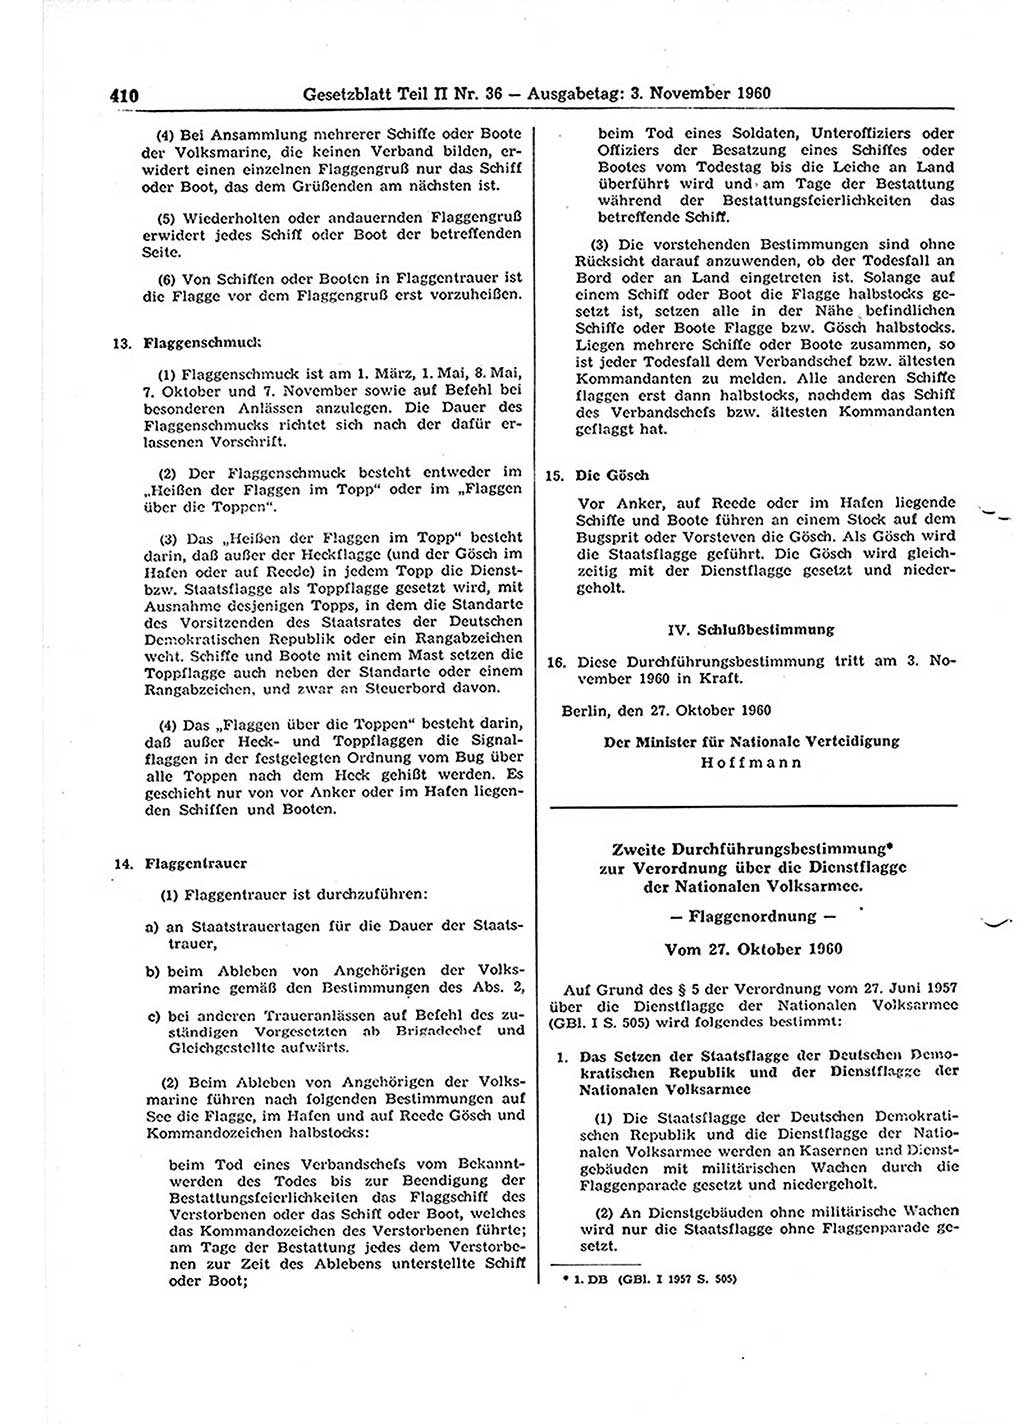 Gesetzblatt (GBl.) der Deutschen Demokratischen Republik (DDR) Teil ⅠⅠ 1960, Seite 410 (GBl. DDR ⅠⅠ 1960, S. 410)